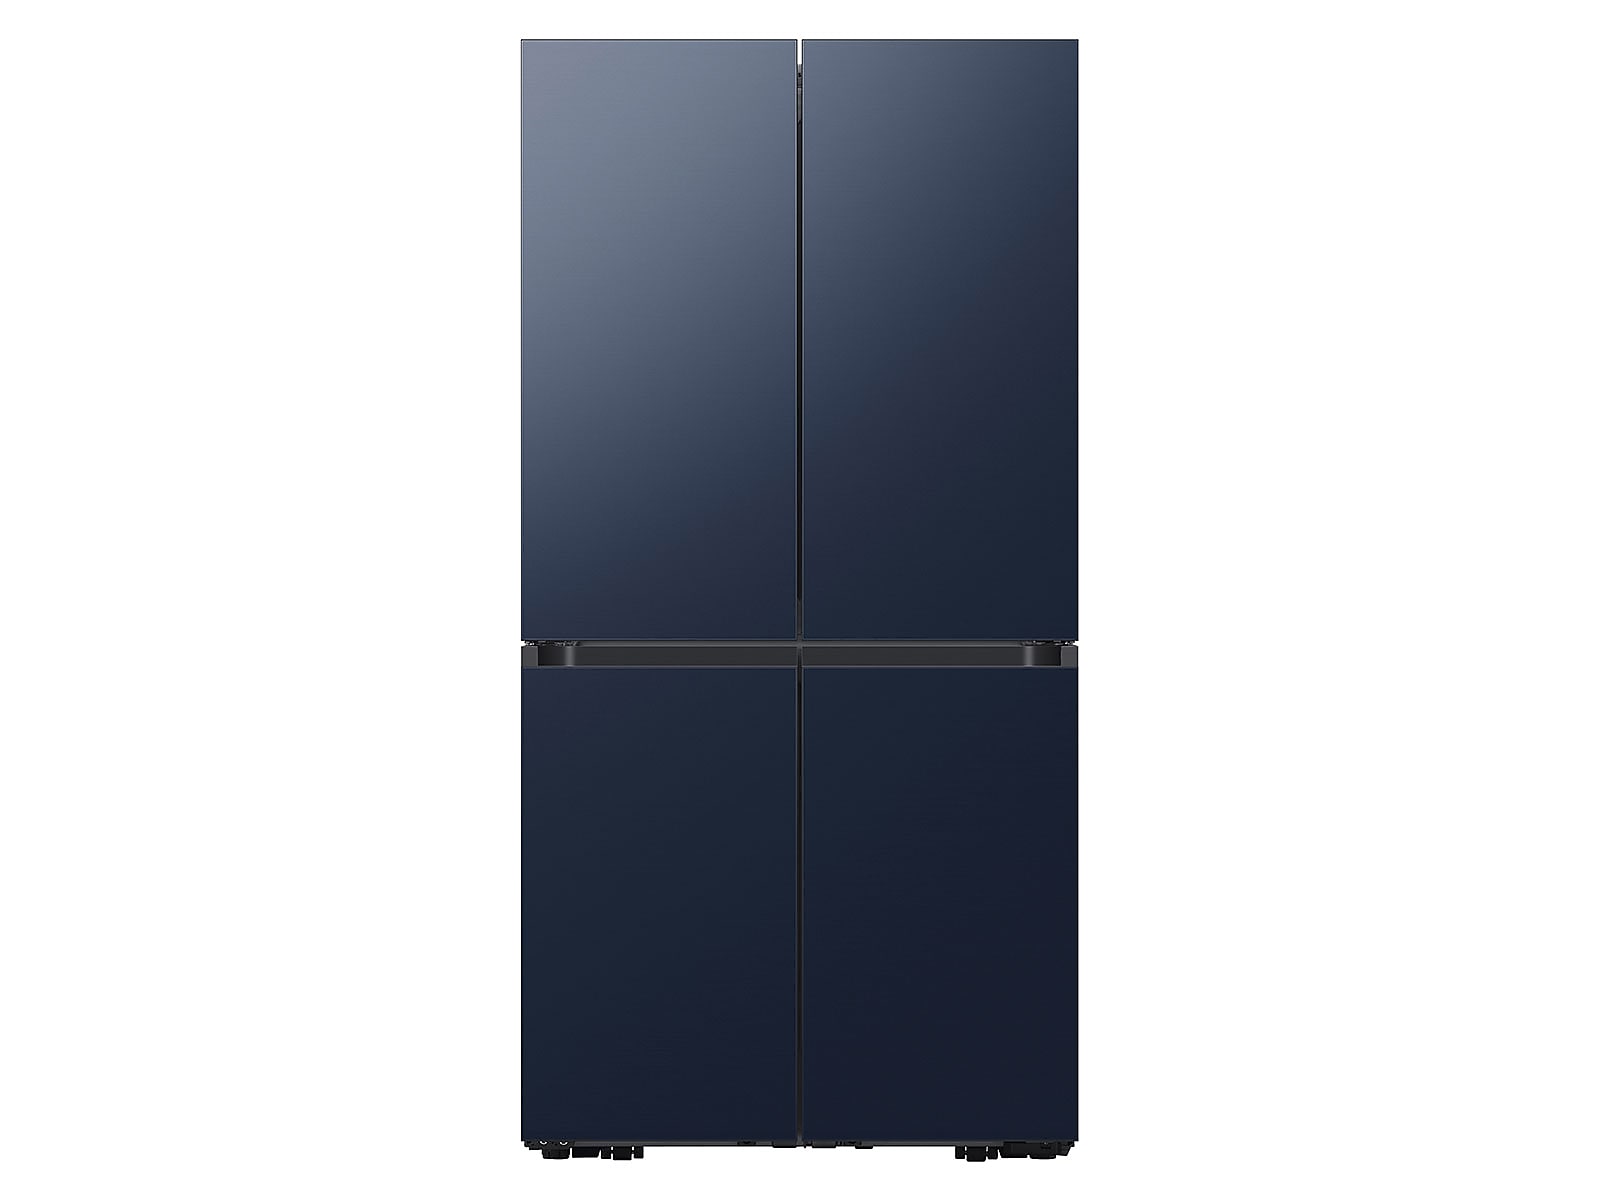 Samsung Bespoke Counter Depth 4-Door Flex™ Refrigerator in Navy Blue Steel (23 cu. ft.) in Navy Steel(BNDL-1616699068555) photo